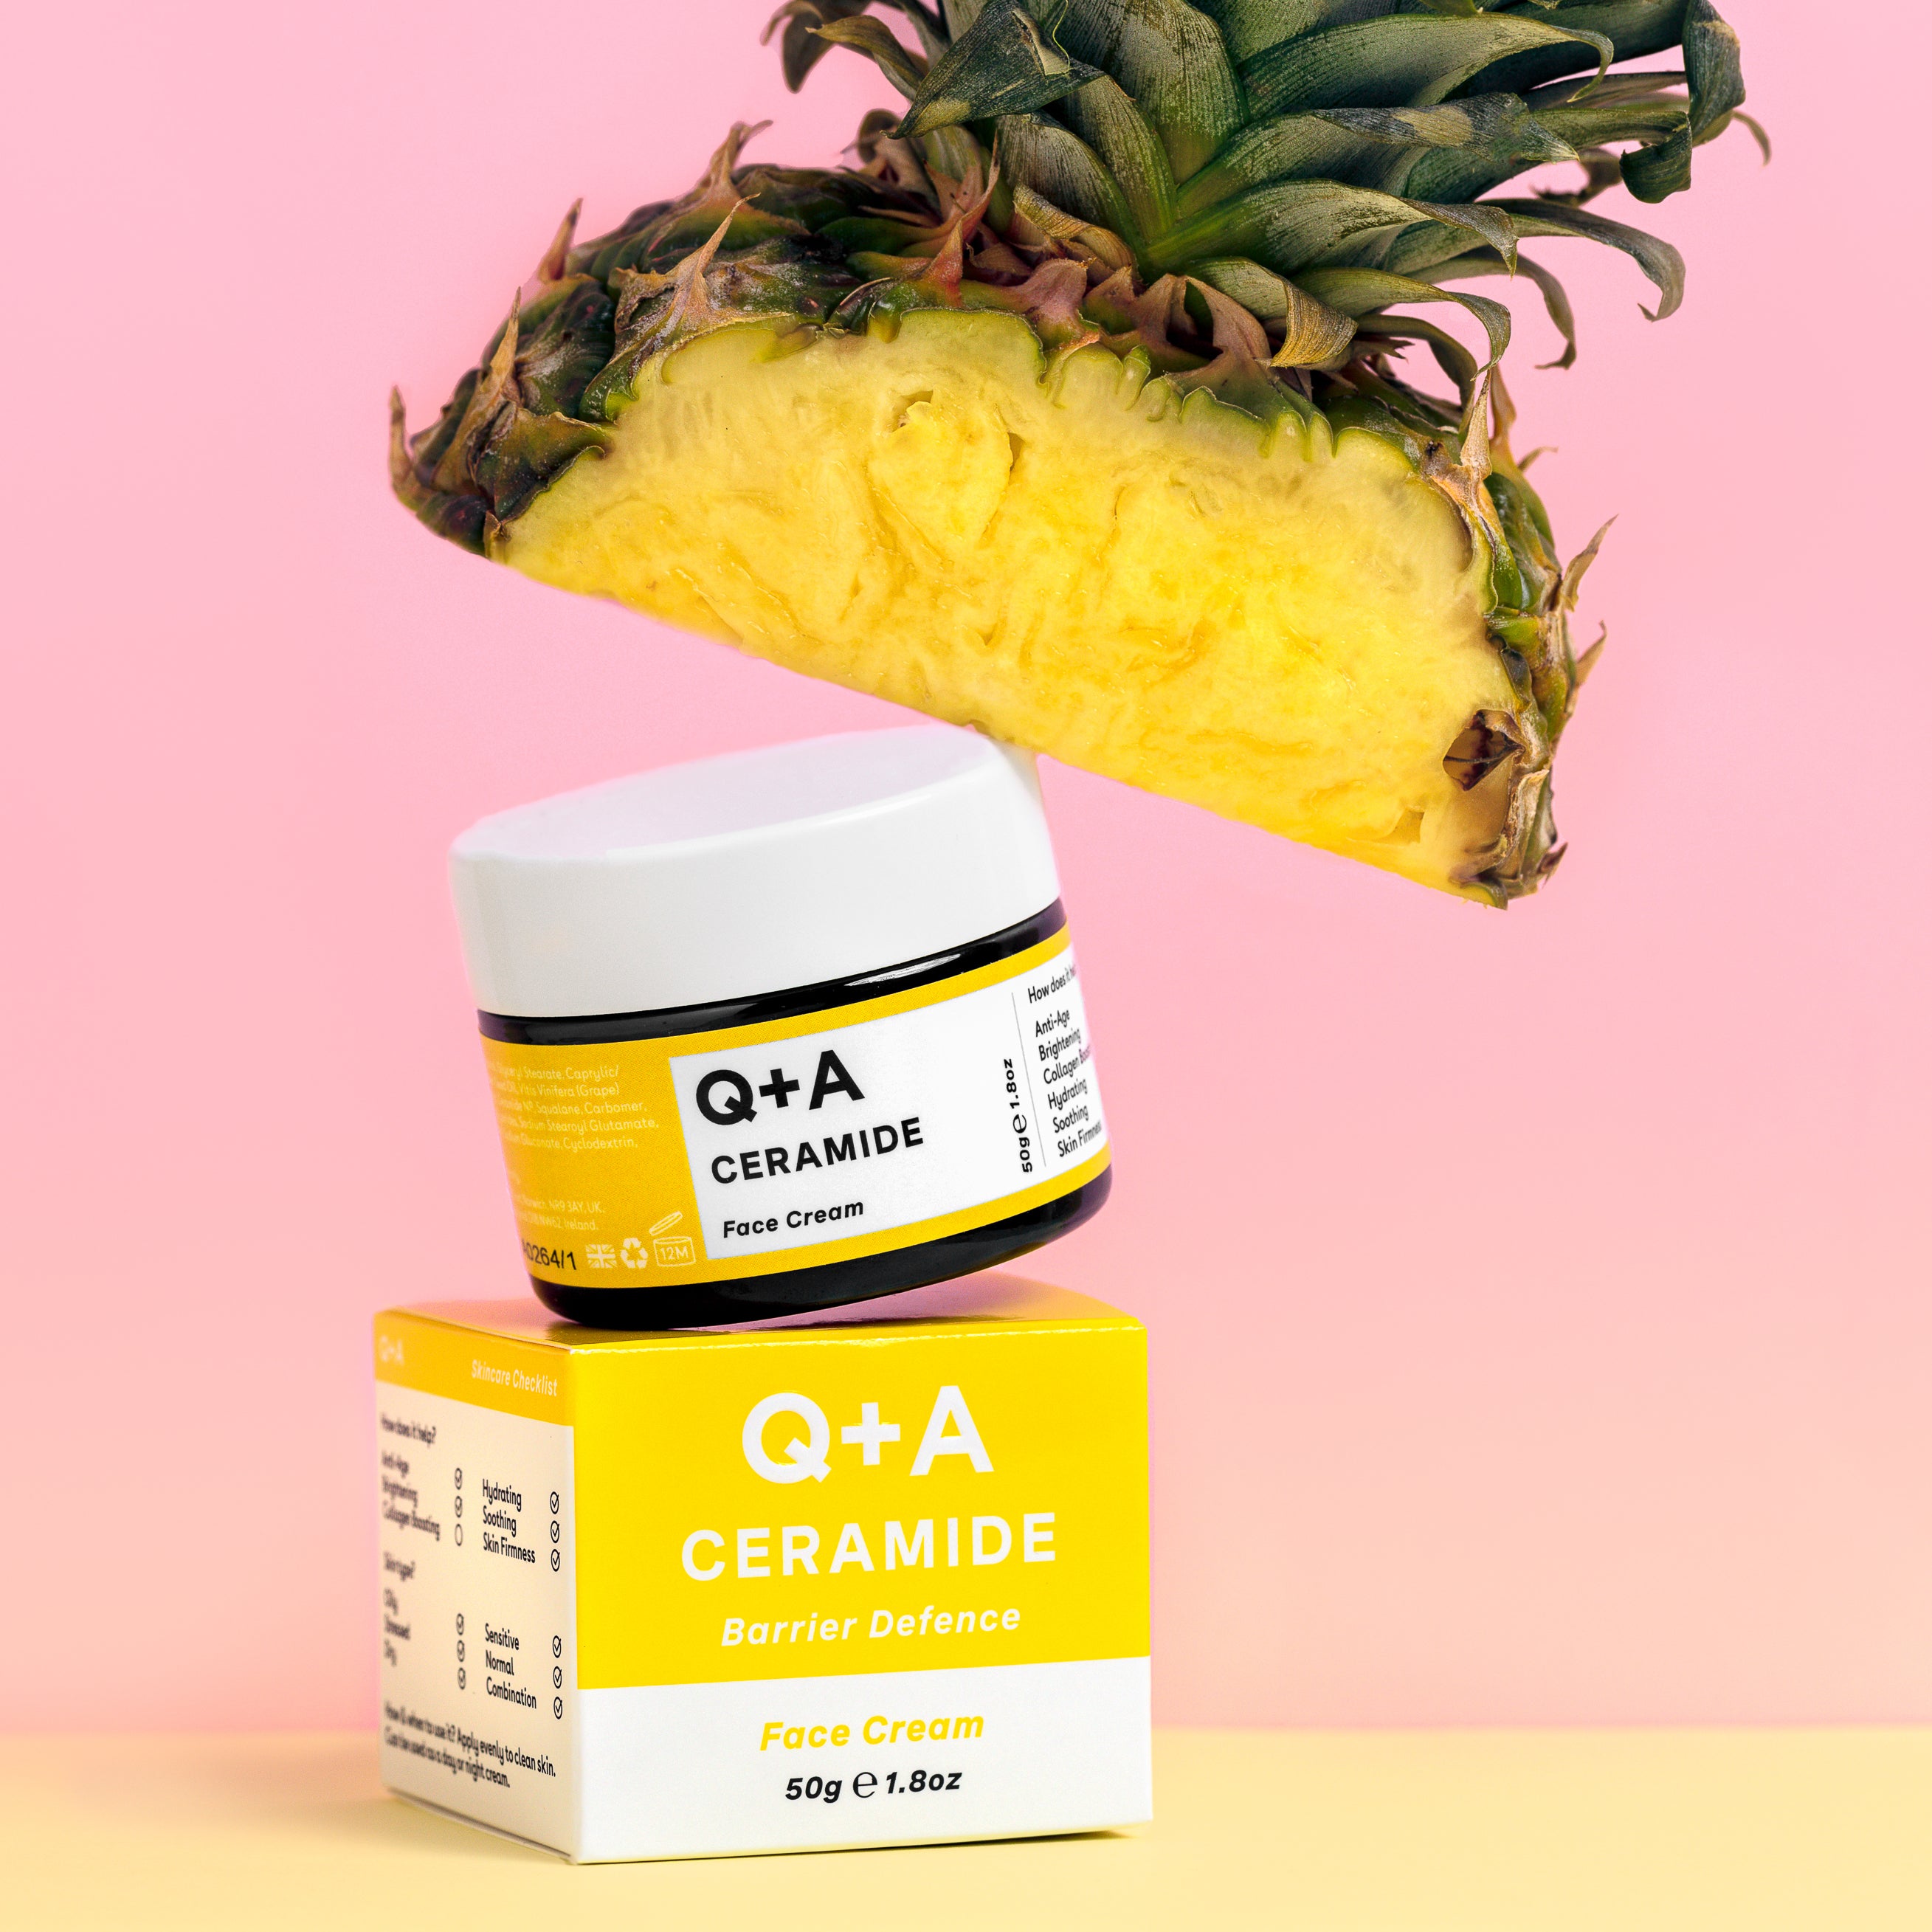 Ceramide Face Cream and pineapple